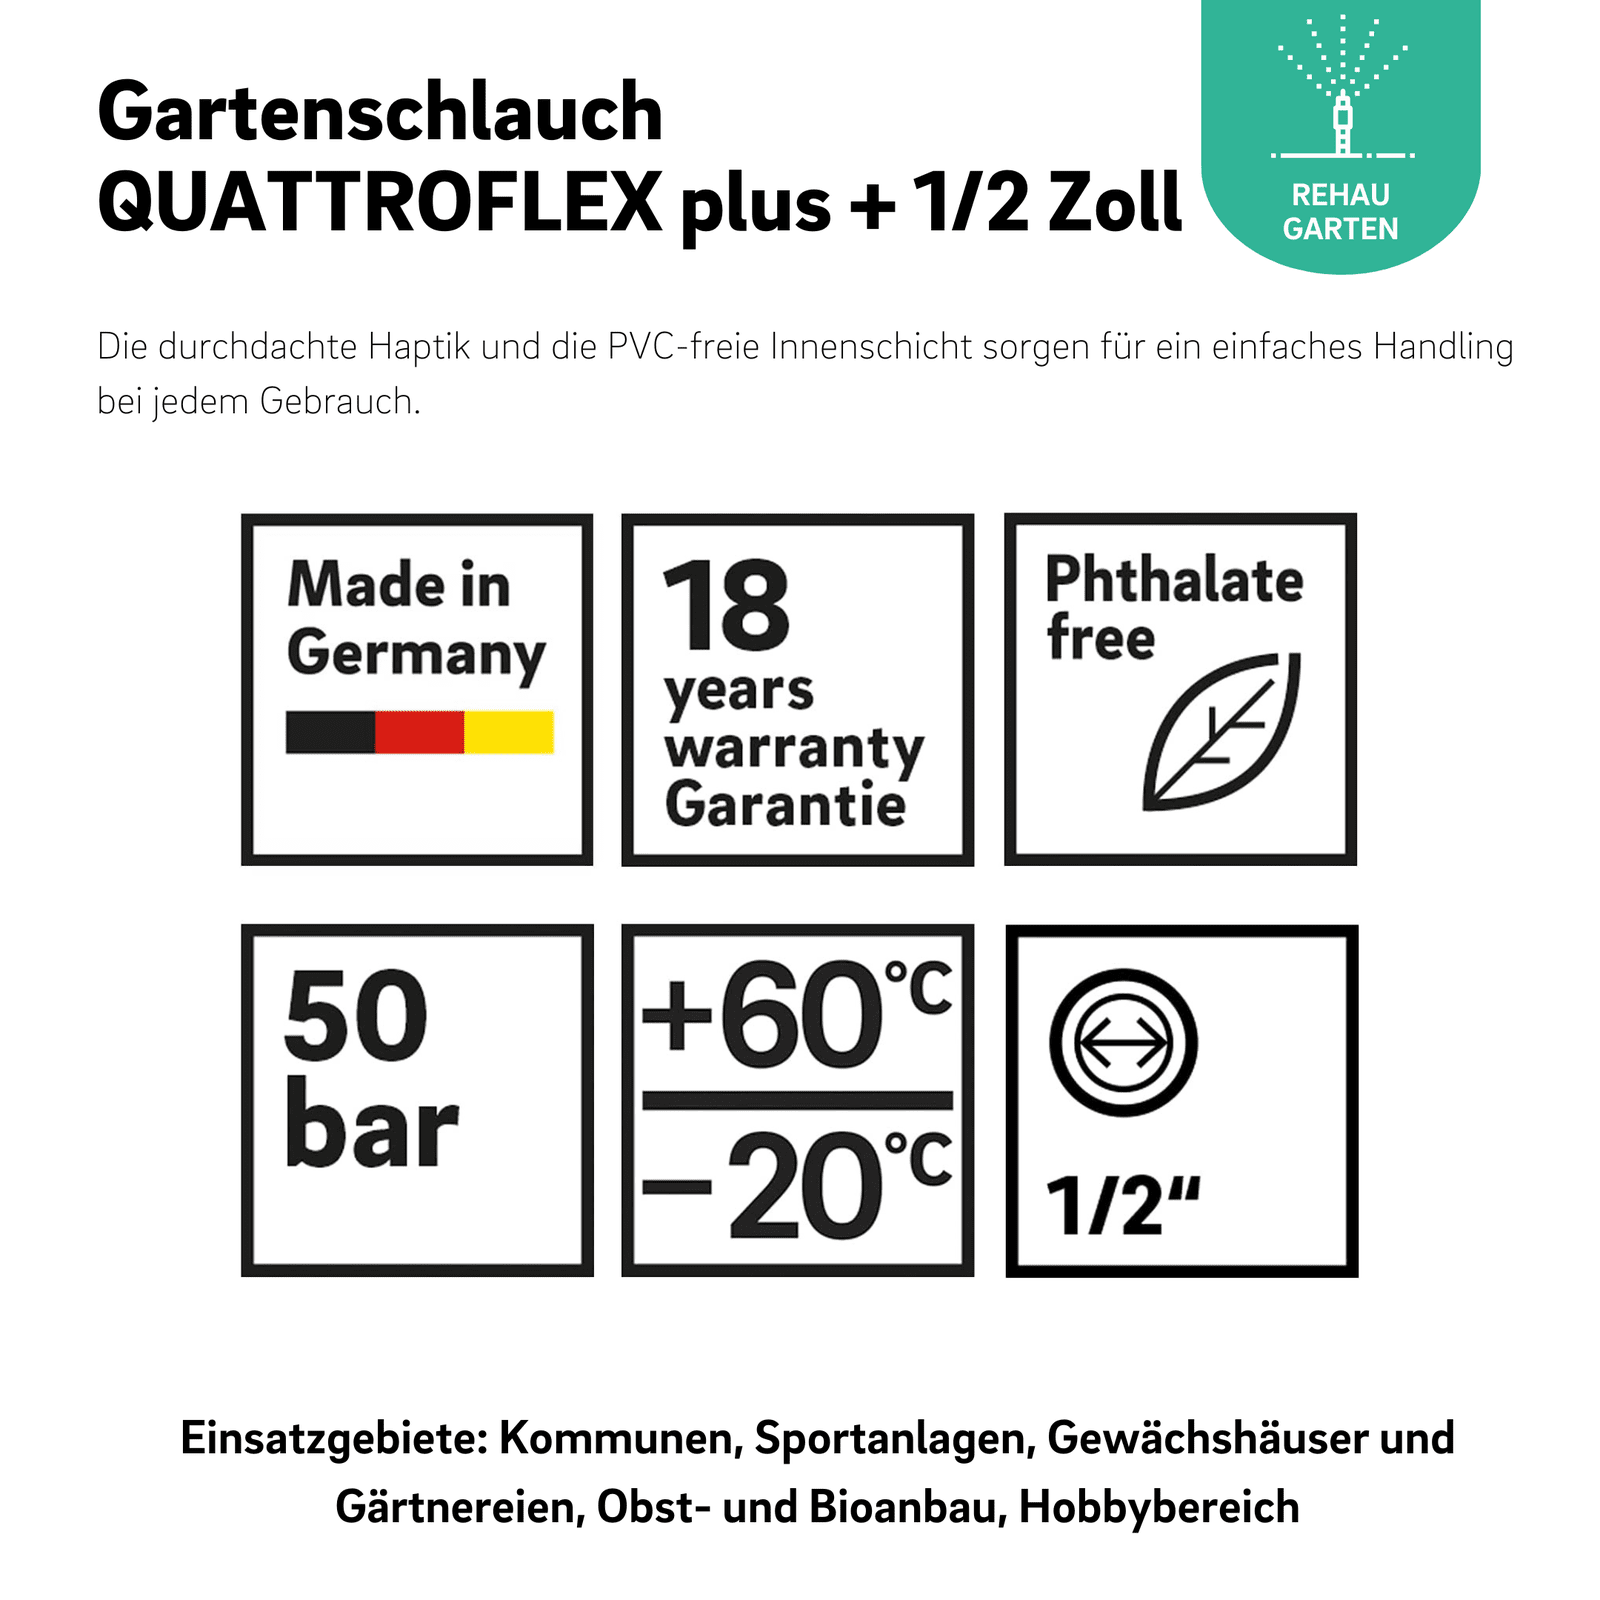 Gartenschlauch QUATTROFLEX plus + 1/2 Zoll - REHAU Gartenshop